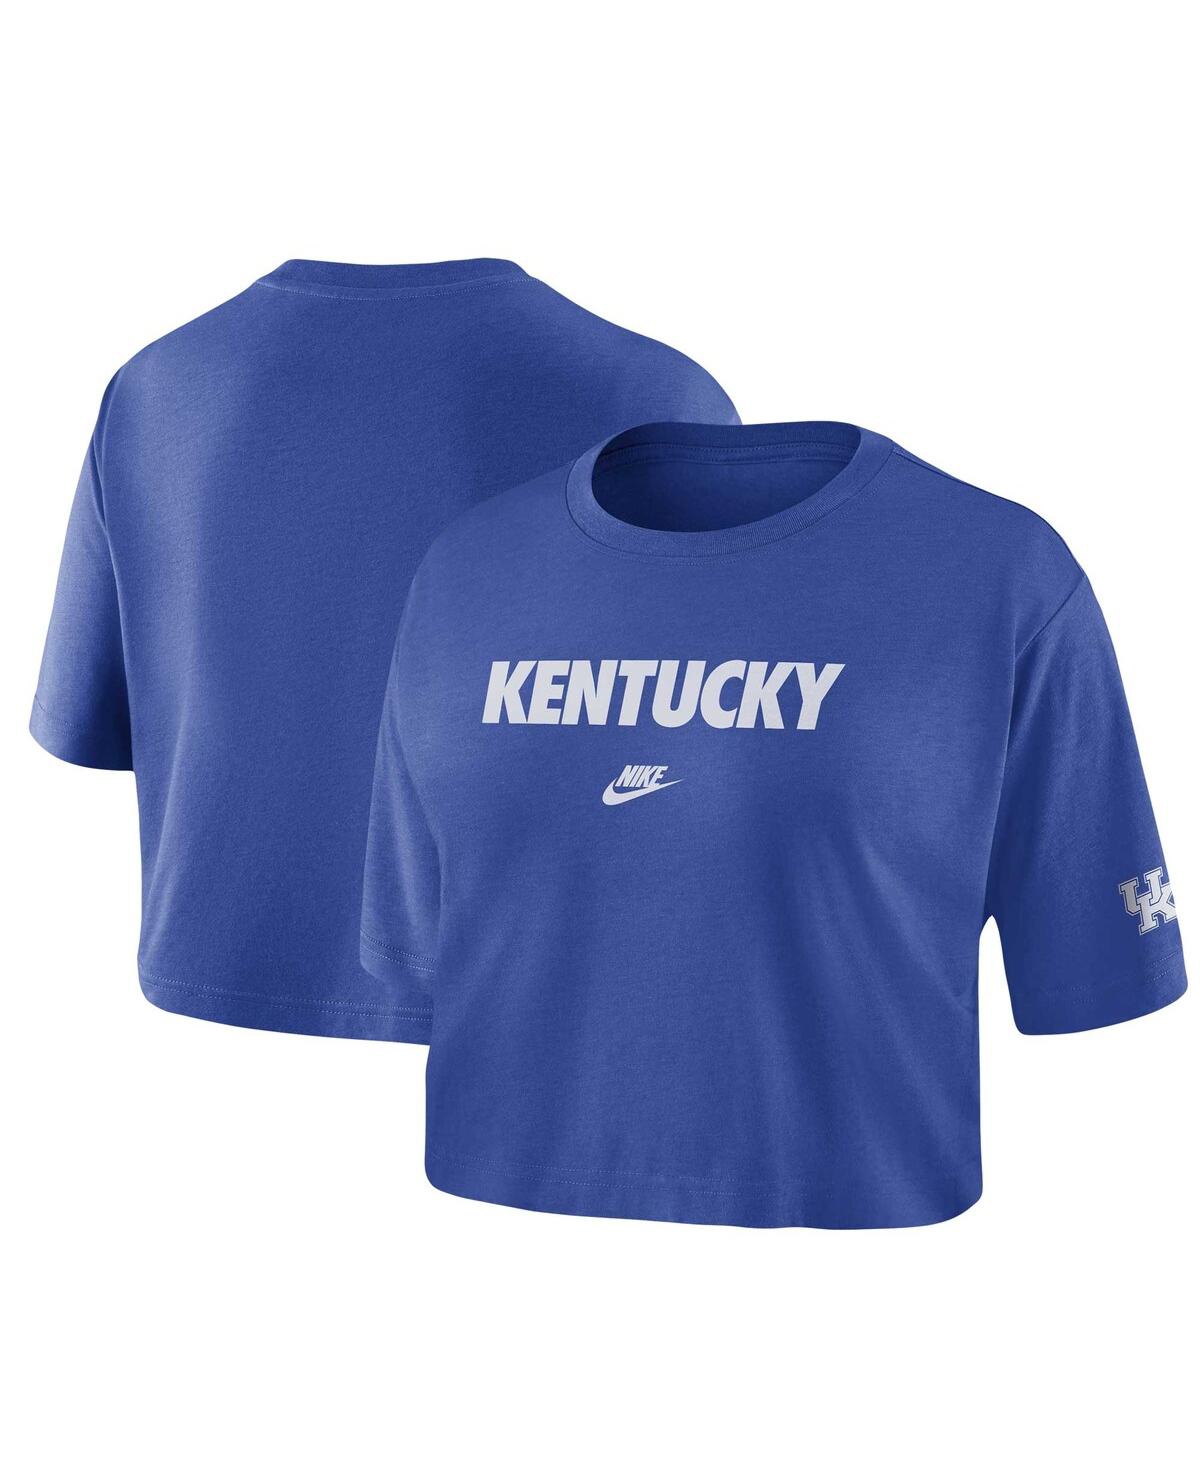 Women's Nike Royal Kentucky Wildcats Wordmark Cropped T-shirt - Royal